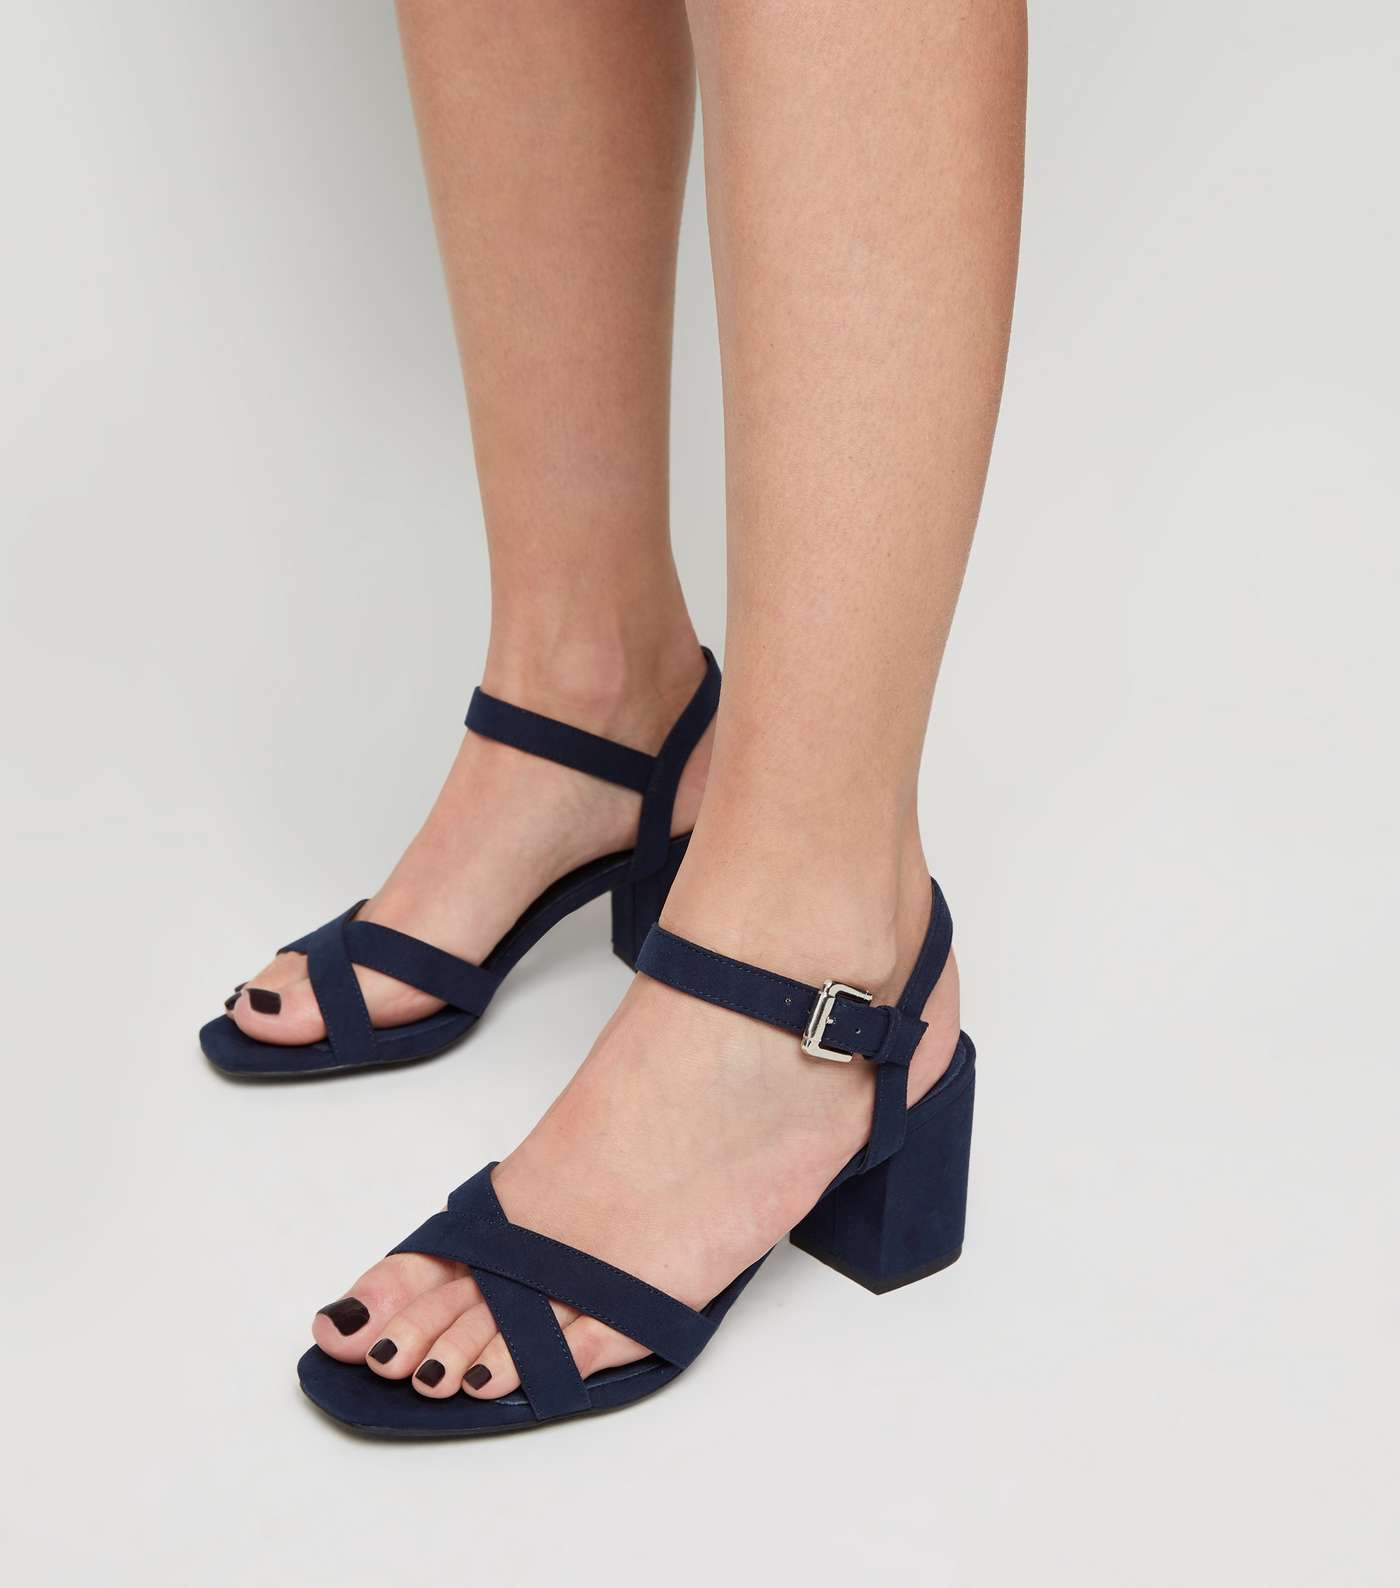 Navy Comfort Flex Low Block Heel Sandals Image 2